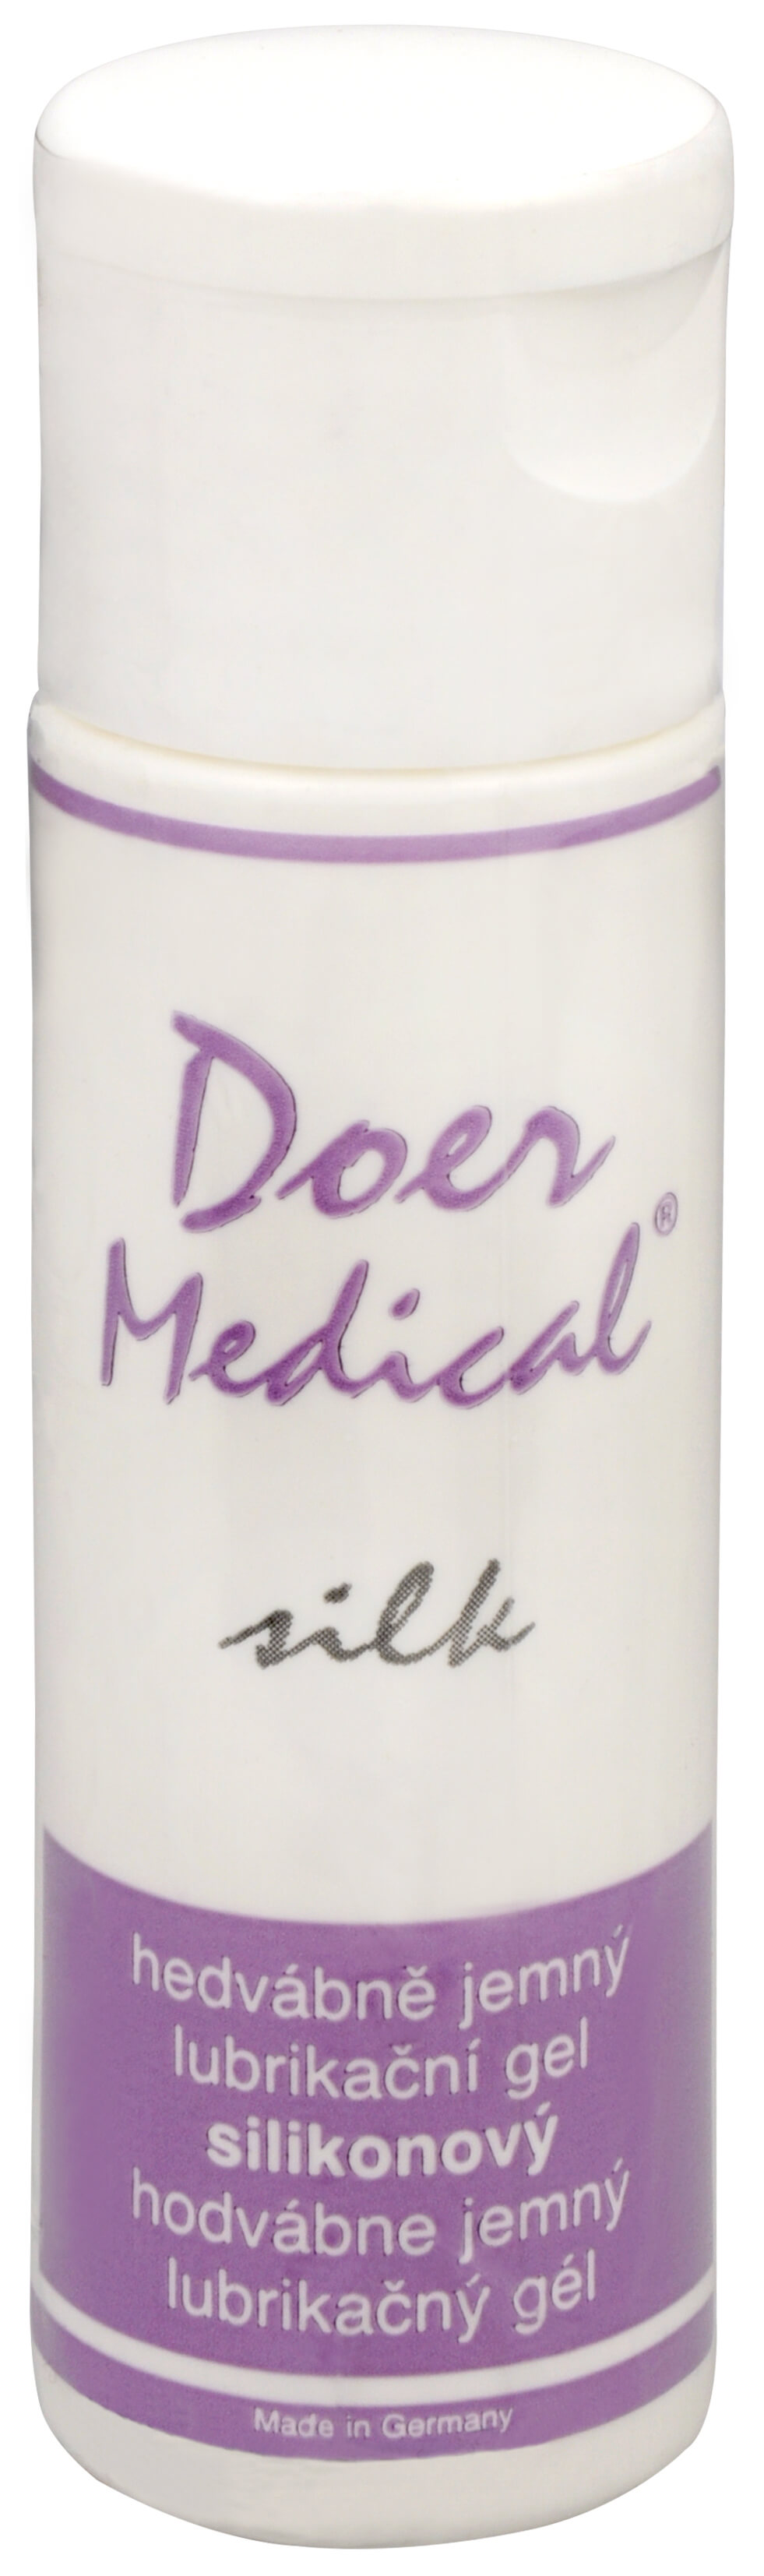 Doer Medical Silk 30 ml